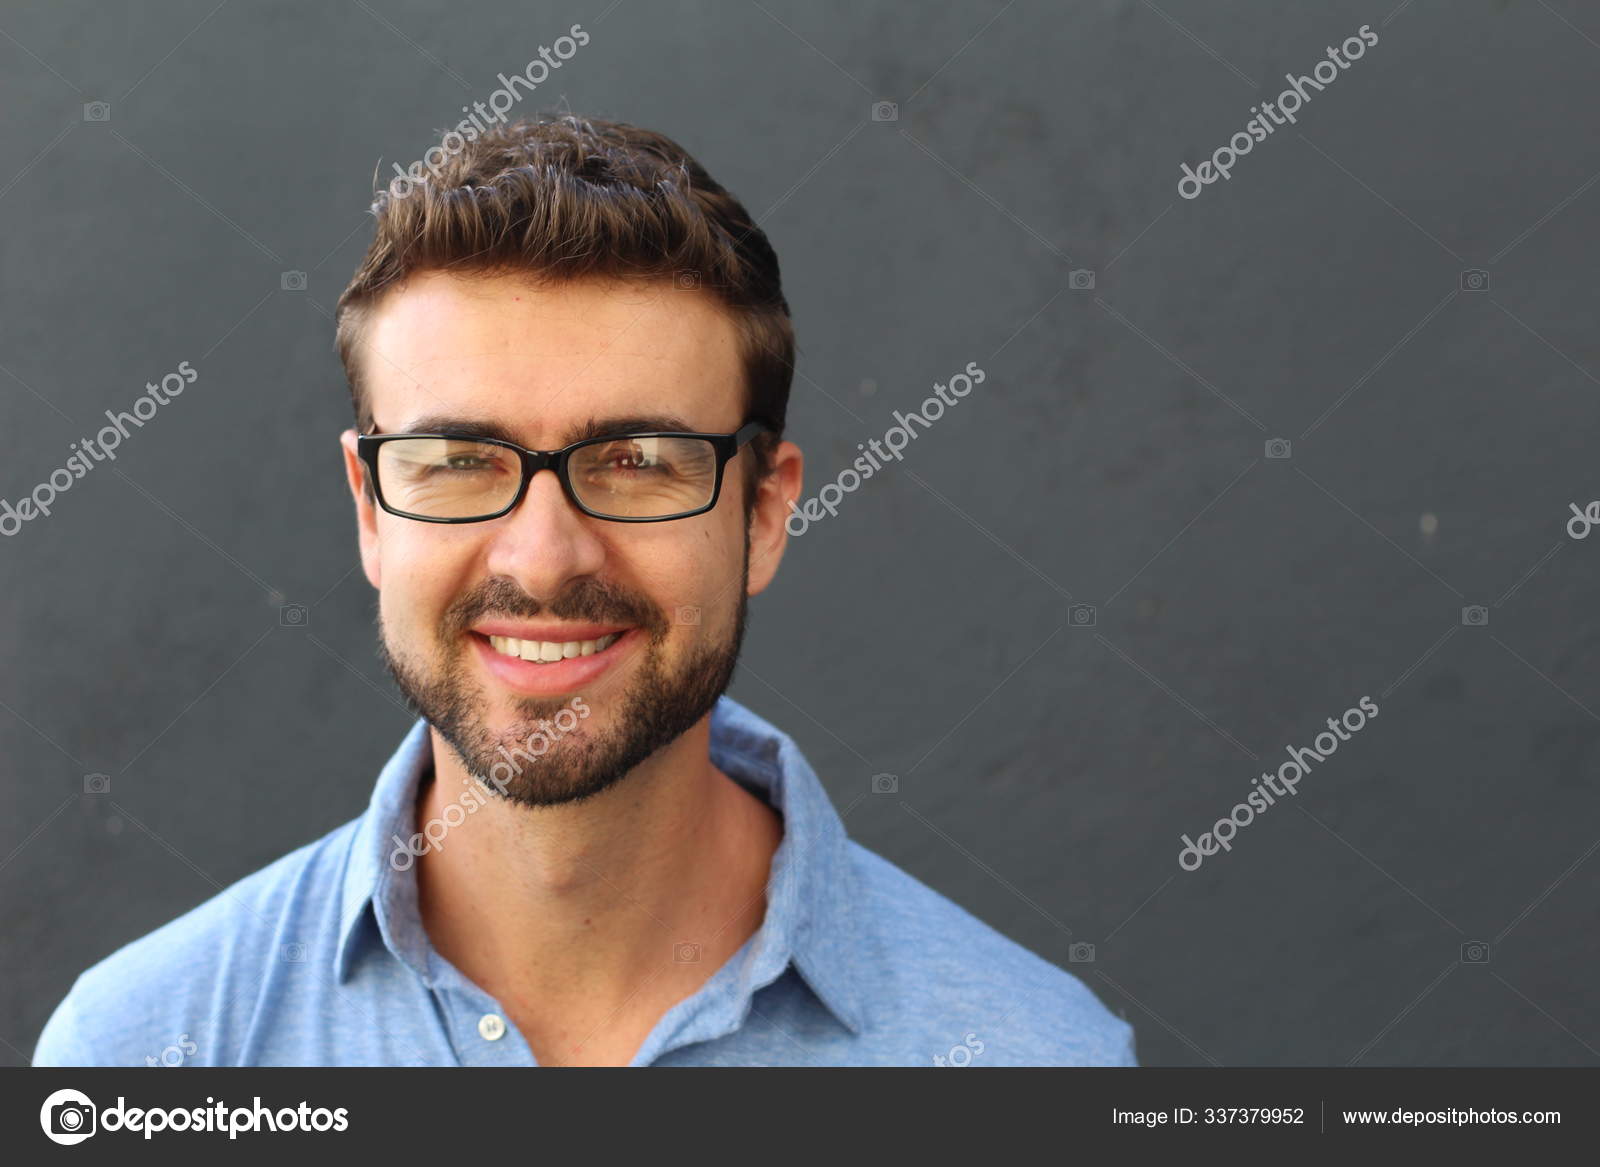 Portret van een leuke man in blauw poloshirt en bril op grijze achtergrond.